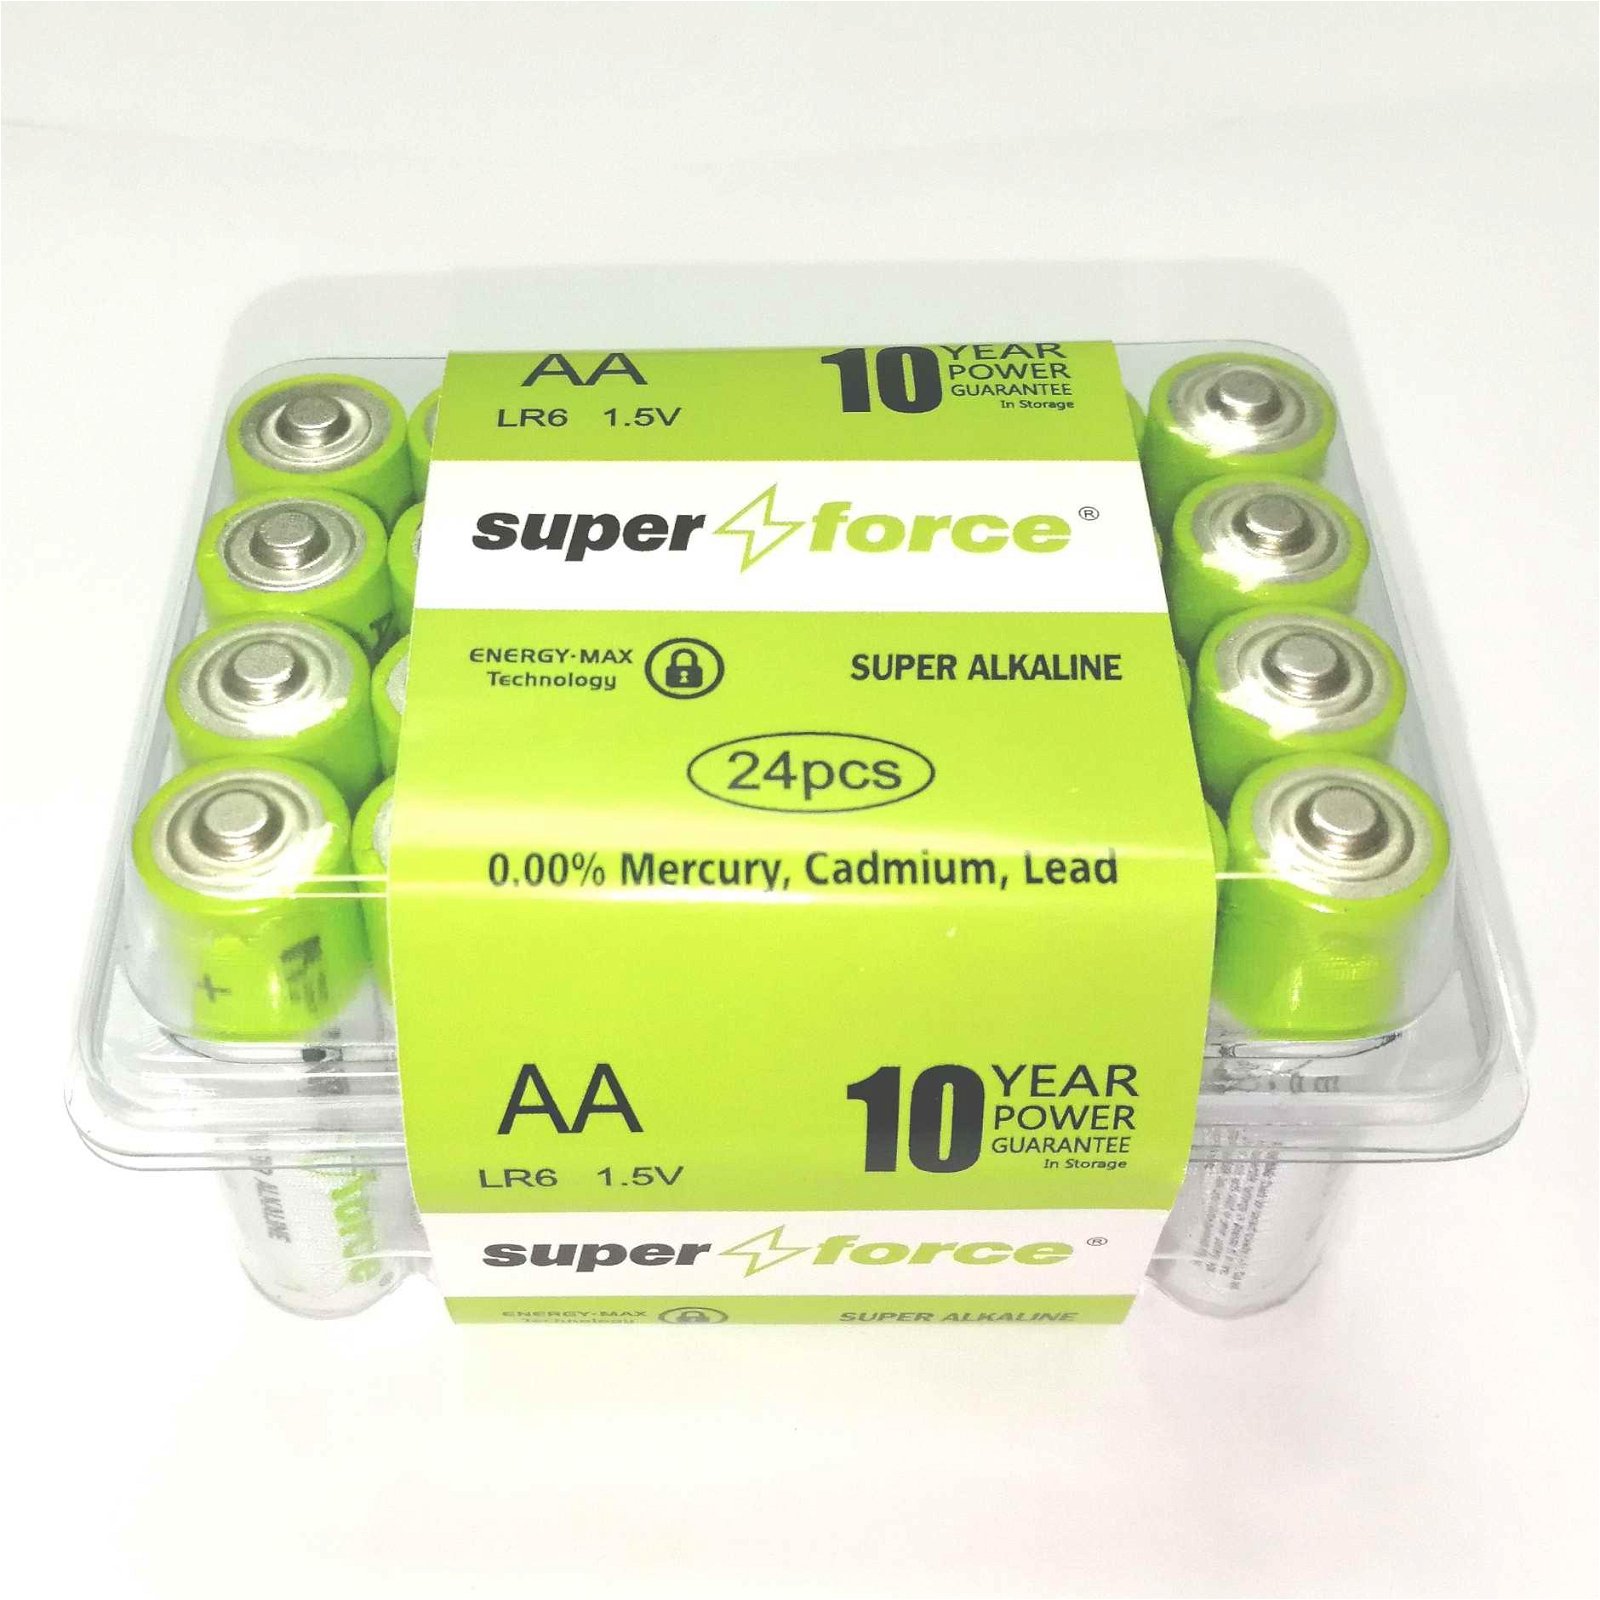 Super Alkaline AA size LR6 Pvc Box of 24